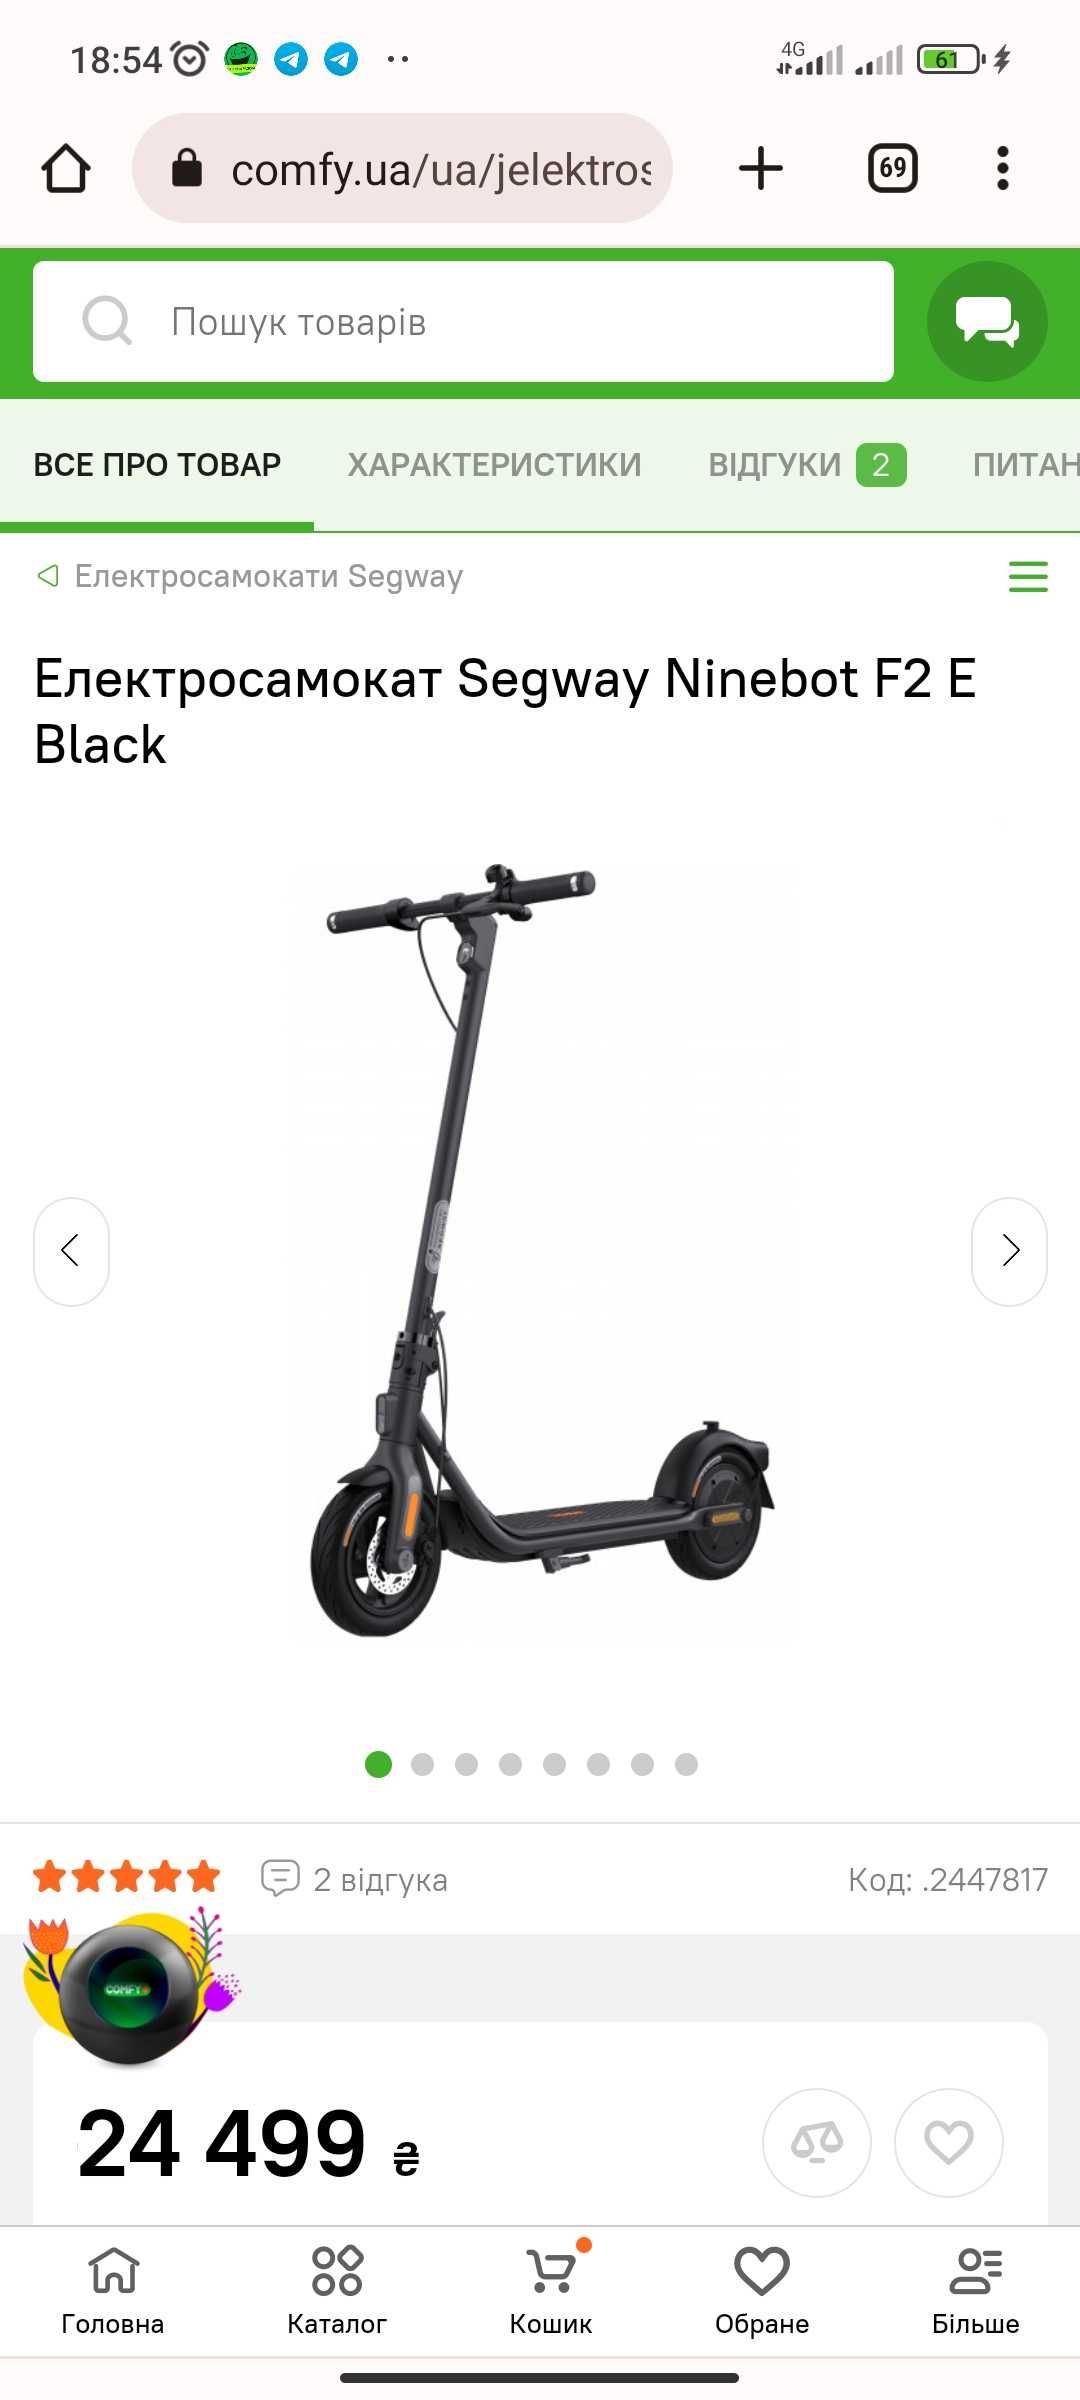 Електросамокат Segway Ninebot F2E з гарантією.